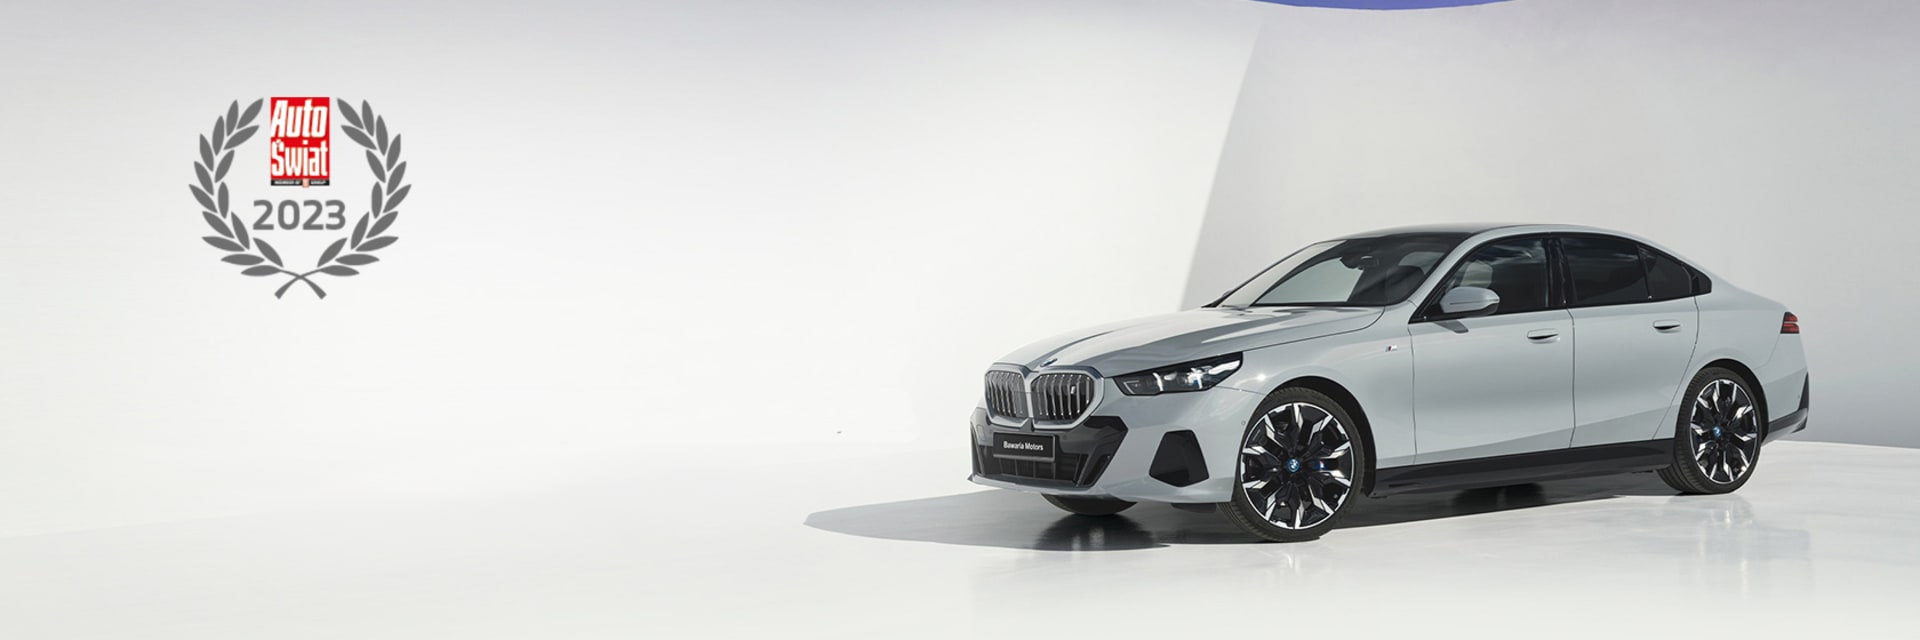 BMW w rankingu salonów Auto Świata 2023